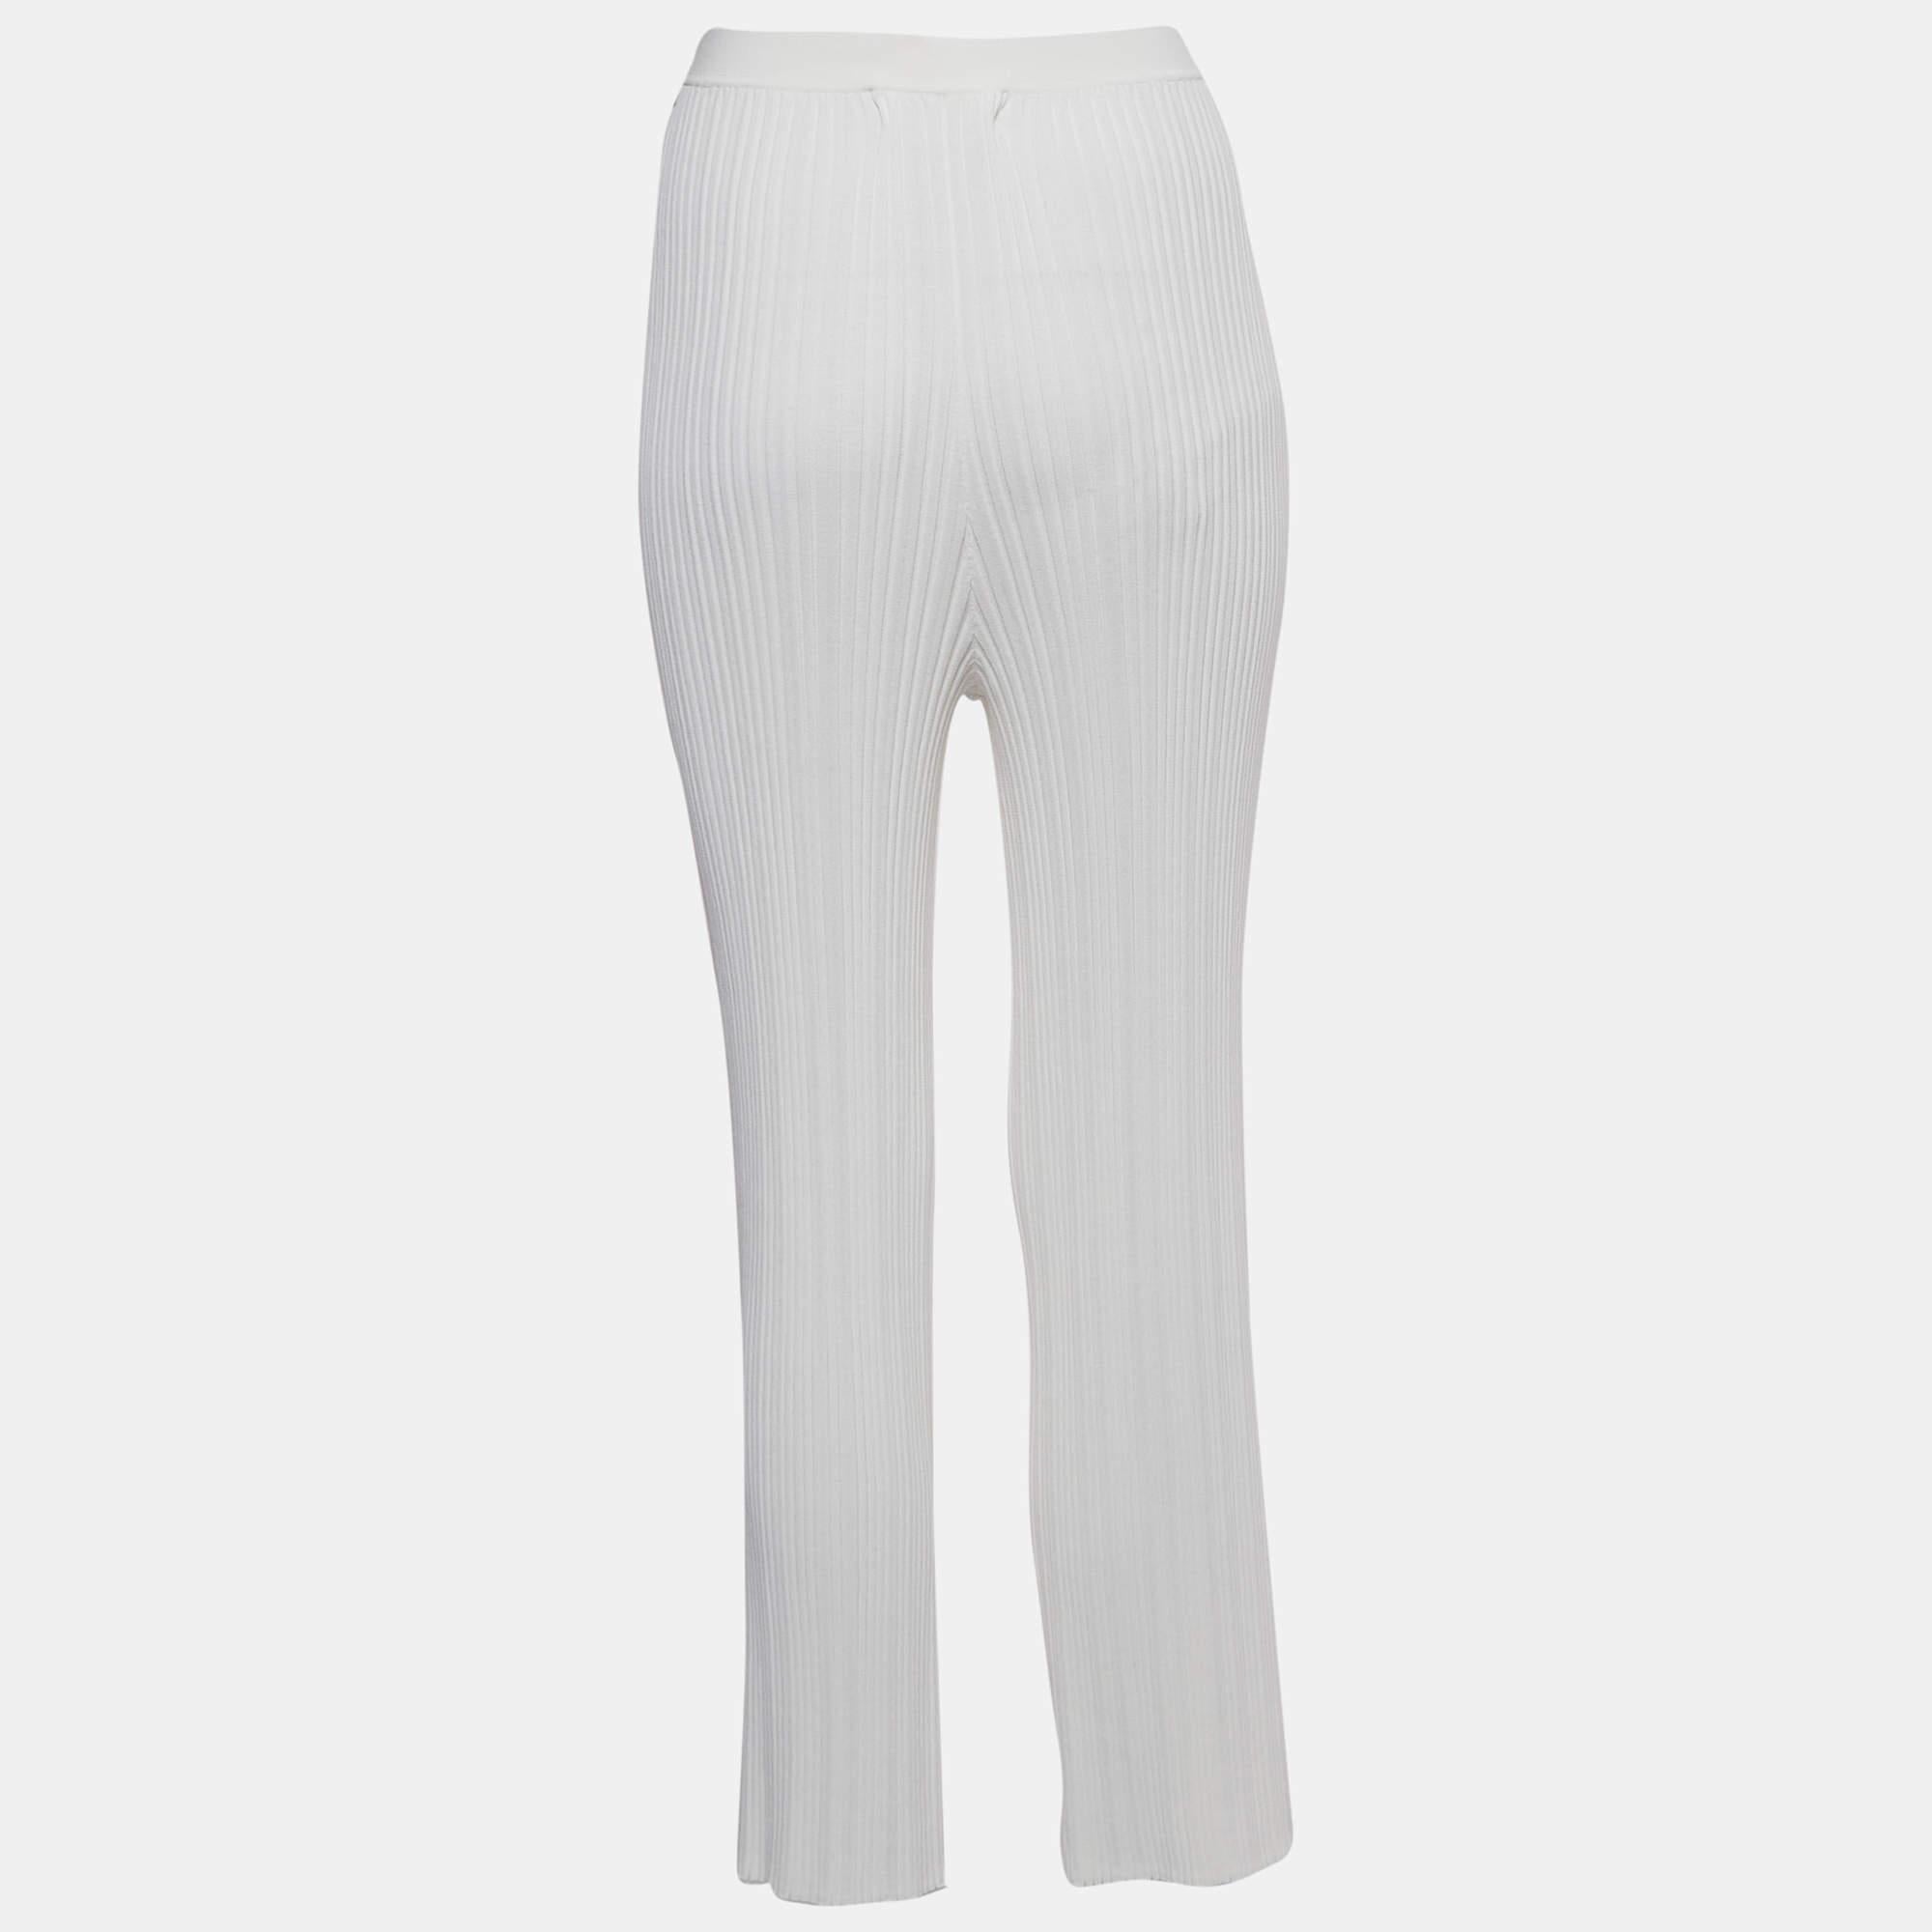 Die Hosen von Dion Lee sind ein Beispiel für moderne Eleganz. Die gerippte Struktur verleiht ihm Tiefe, während der elfenbeinfarbene Farbton Raffinesse ausstrahlt. Diese auf Komfort und Stil zugeschnittene Hose verbindet Vielseitigkeit mit einem